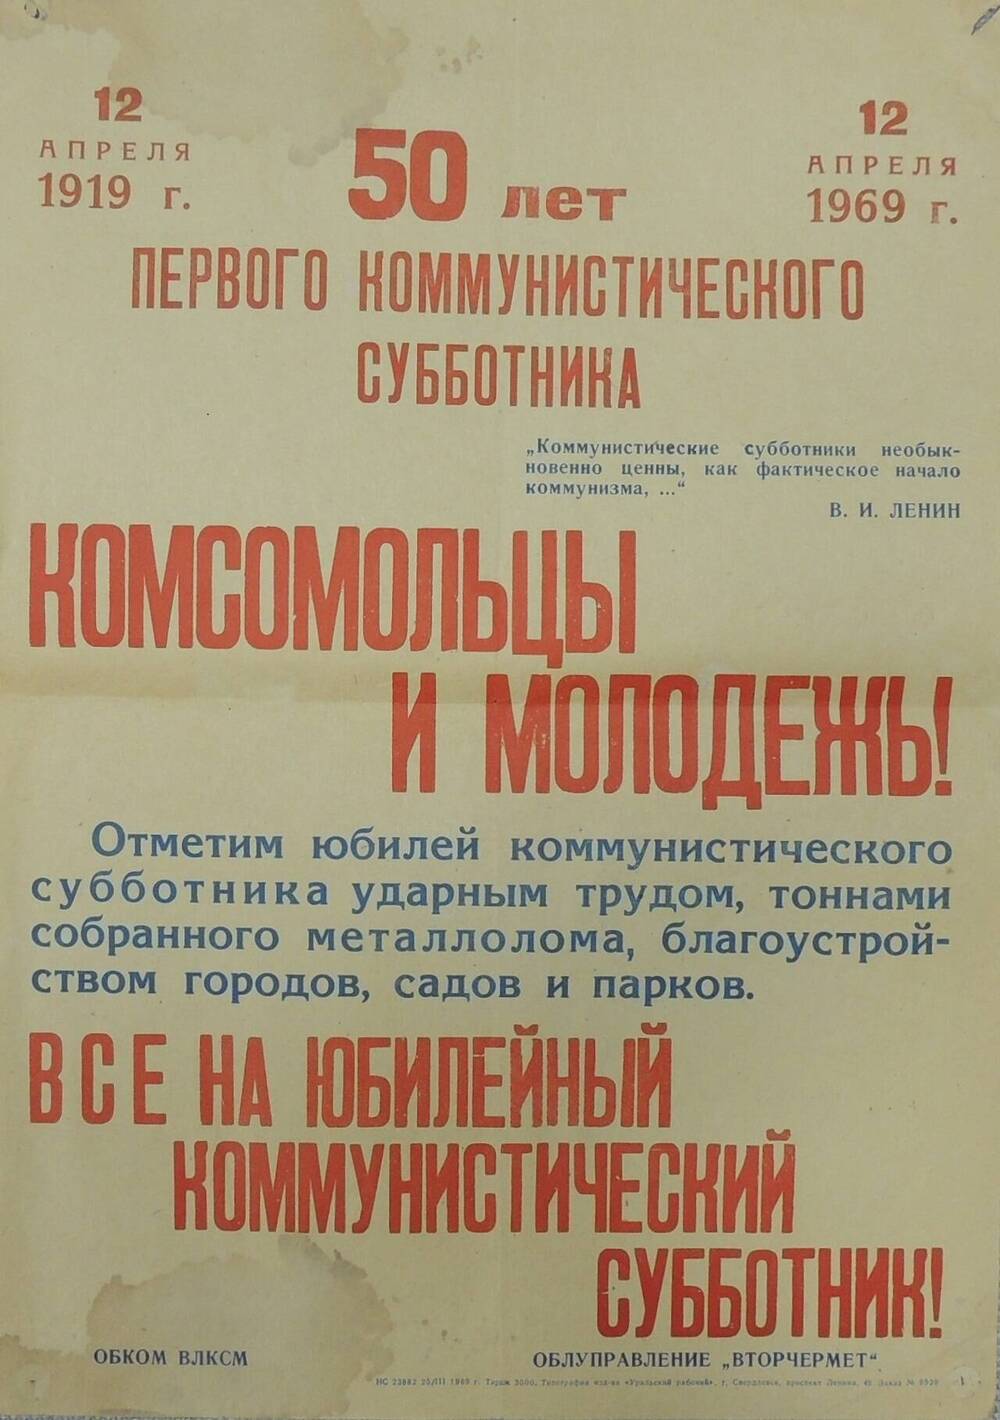 Плакат 50 лет первого коммунистического субботника 12 апреля 1919г